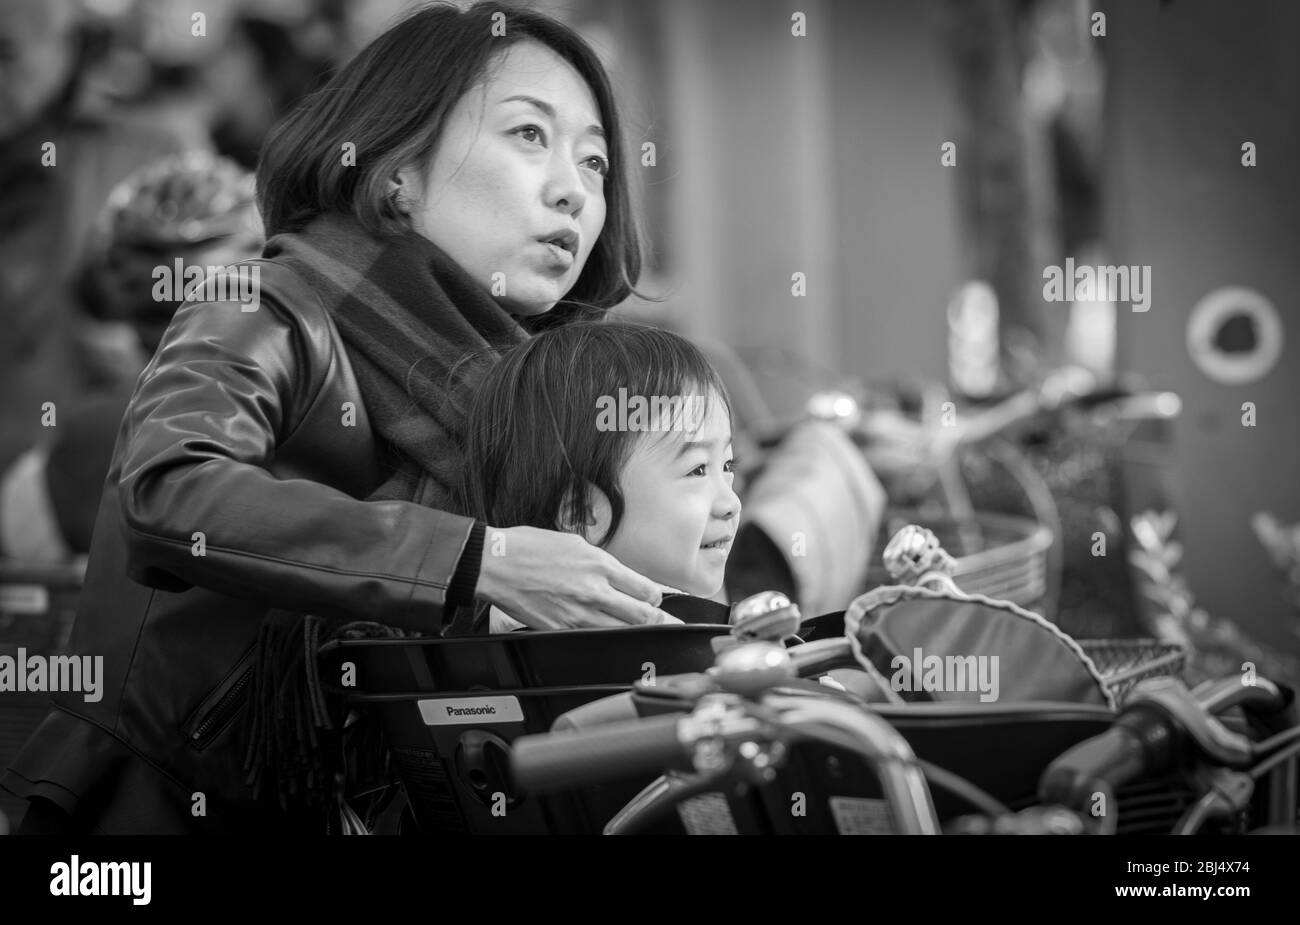 Una madre giapponese aiuta sua figlia fuori delle biciclette prima che vadano a fare shopping al mercato di Ameyoko a pochi metri di distanza Foto Stock